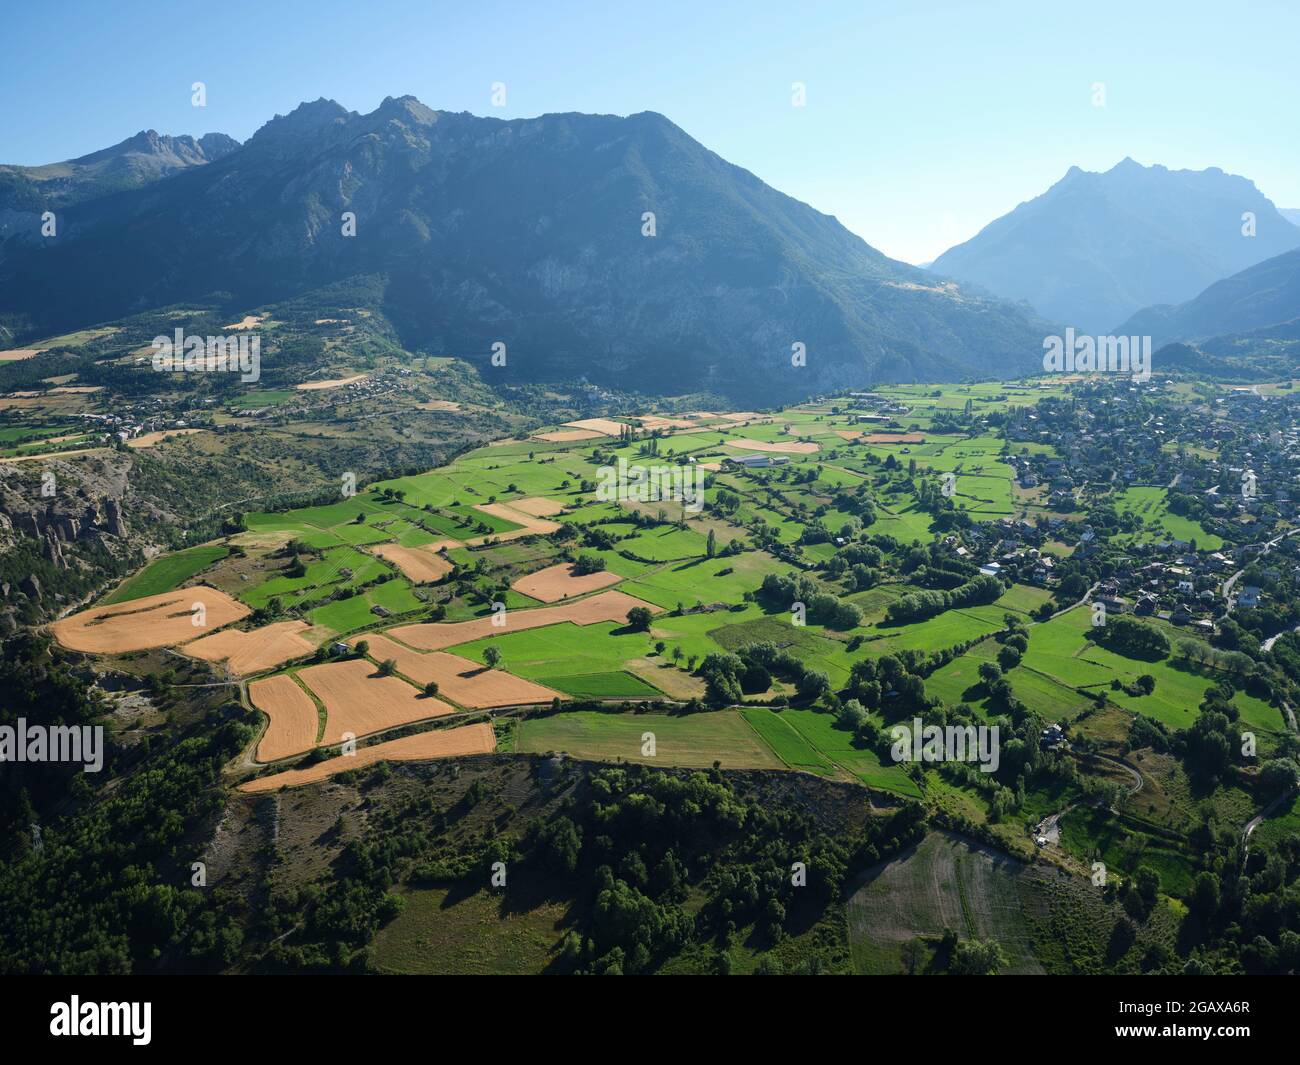 VUE AÉRIENNE. Terres agricoles à la périphérie de Guillestre. Vallée de la Durance, Hautes-Alpes, France. Banque D'Images